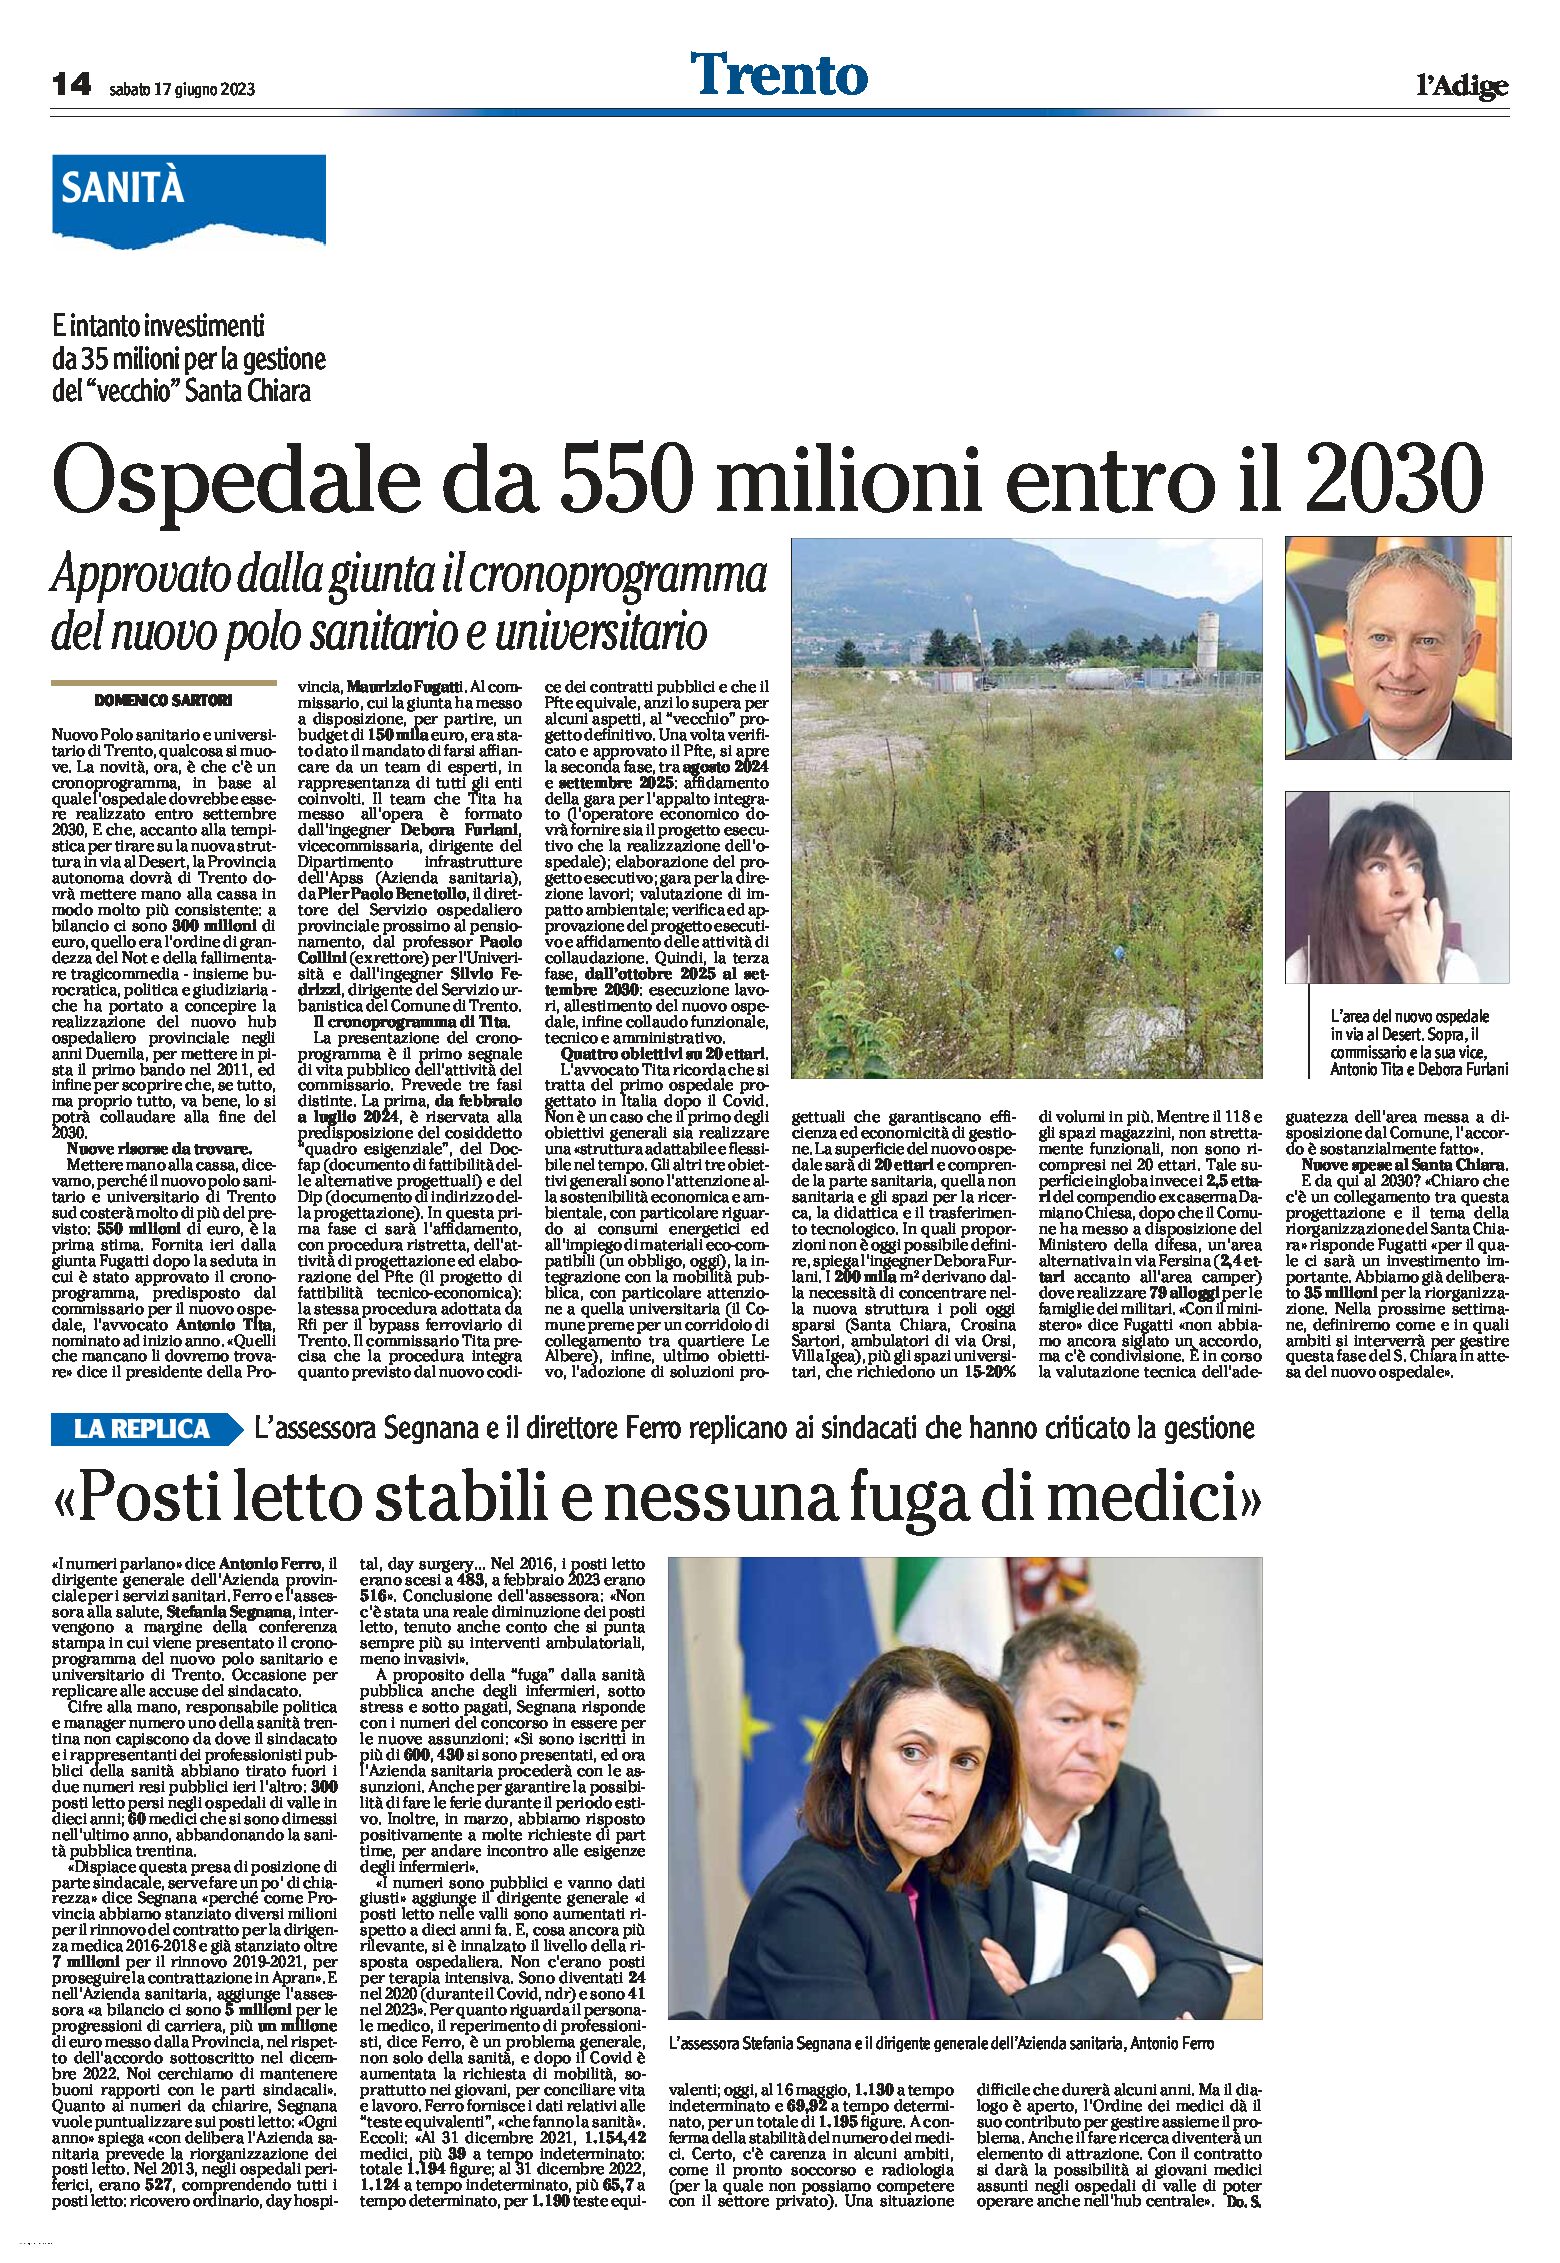 Trento, nuovo ospedale: da 550 milioni entro il 2030